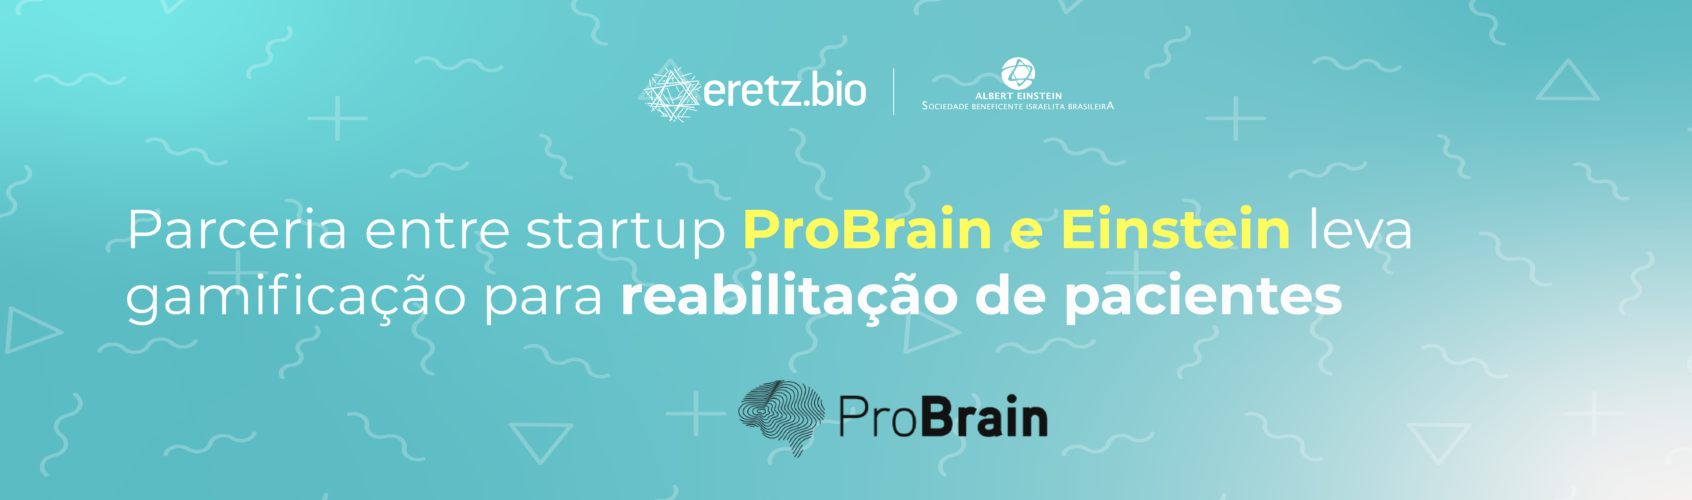 Parceria entre startup ProBrain e Einstein leva gamificação para reabilitação de pacientes